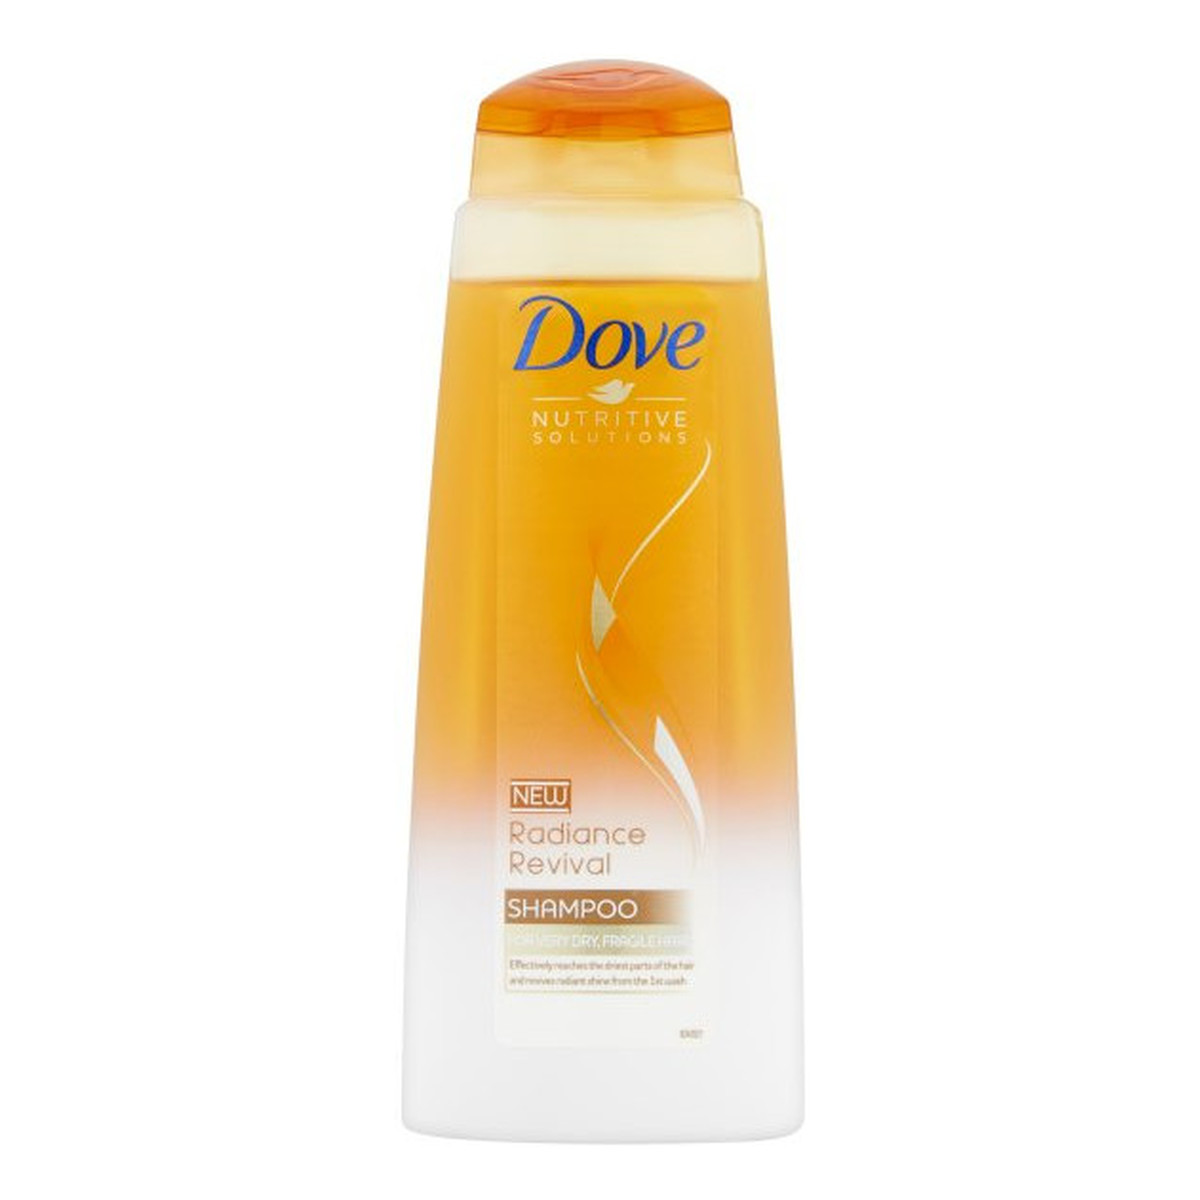 Dove Nutritive Solutions Radiance Revival szampon do włosów zniszczonych 400ml